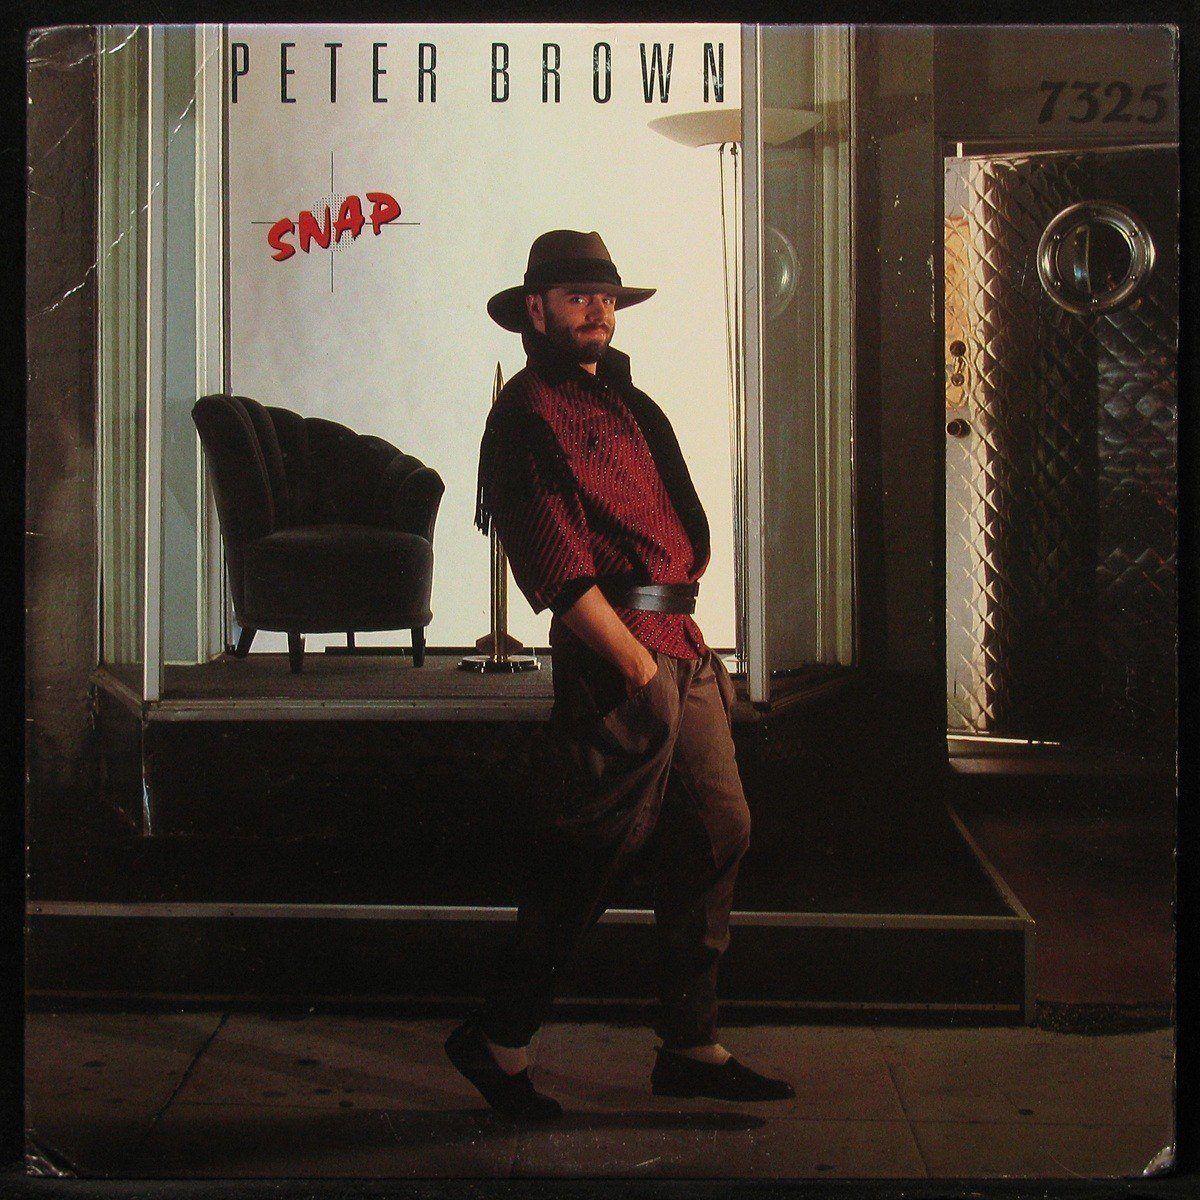 LP Peter Brown — Snap фото